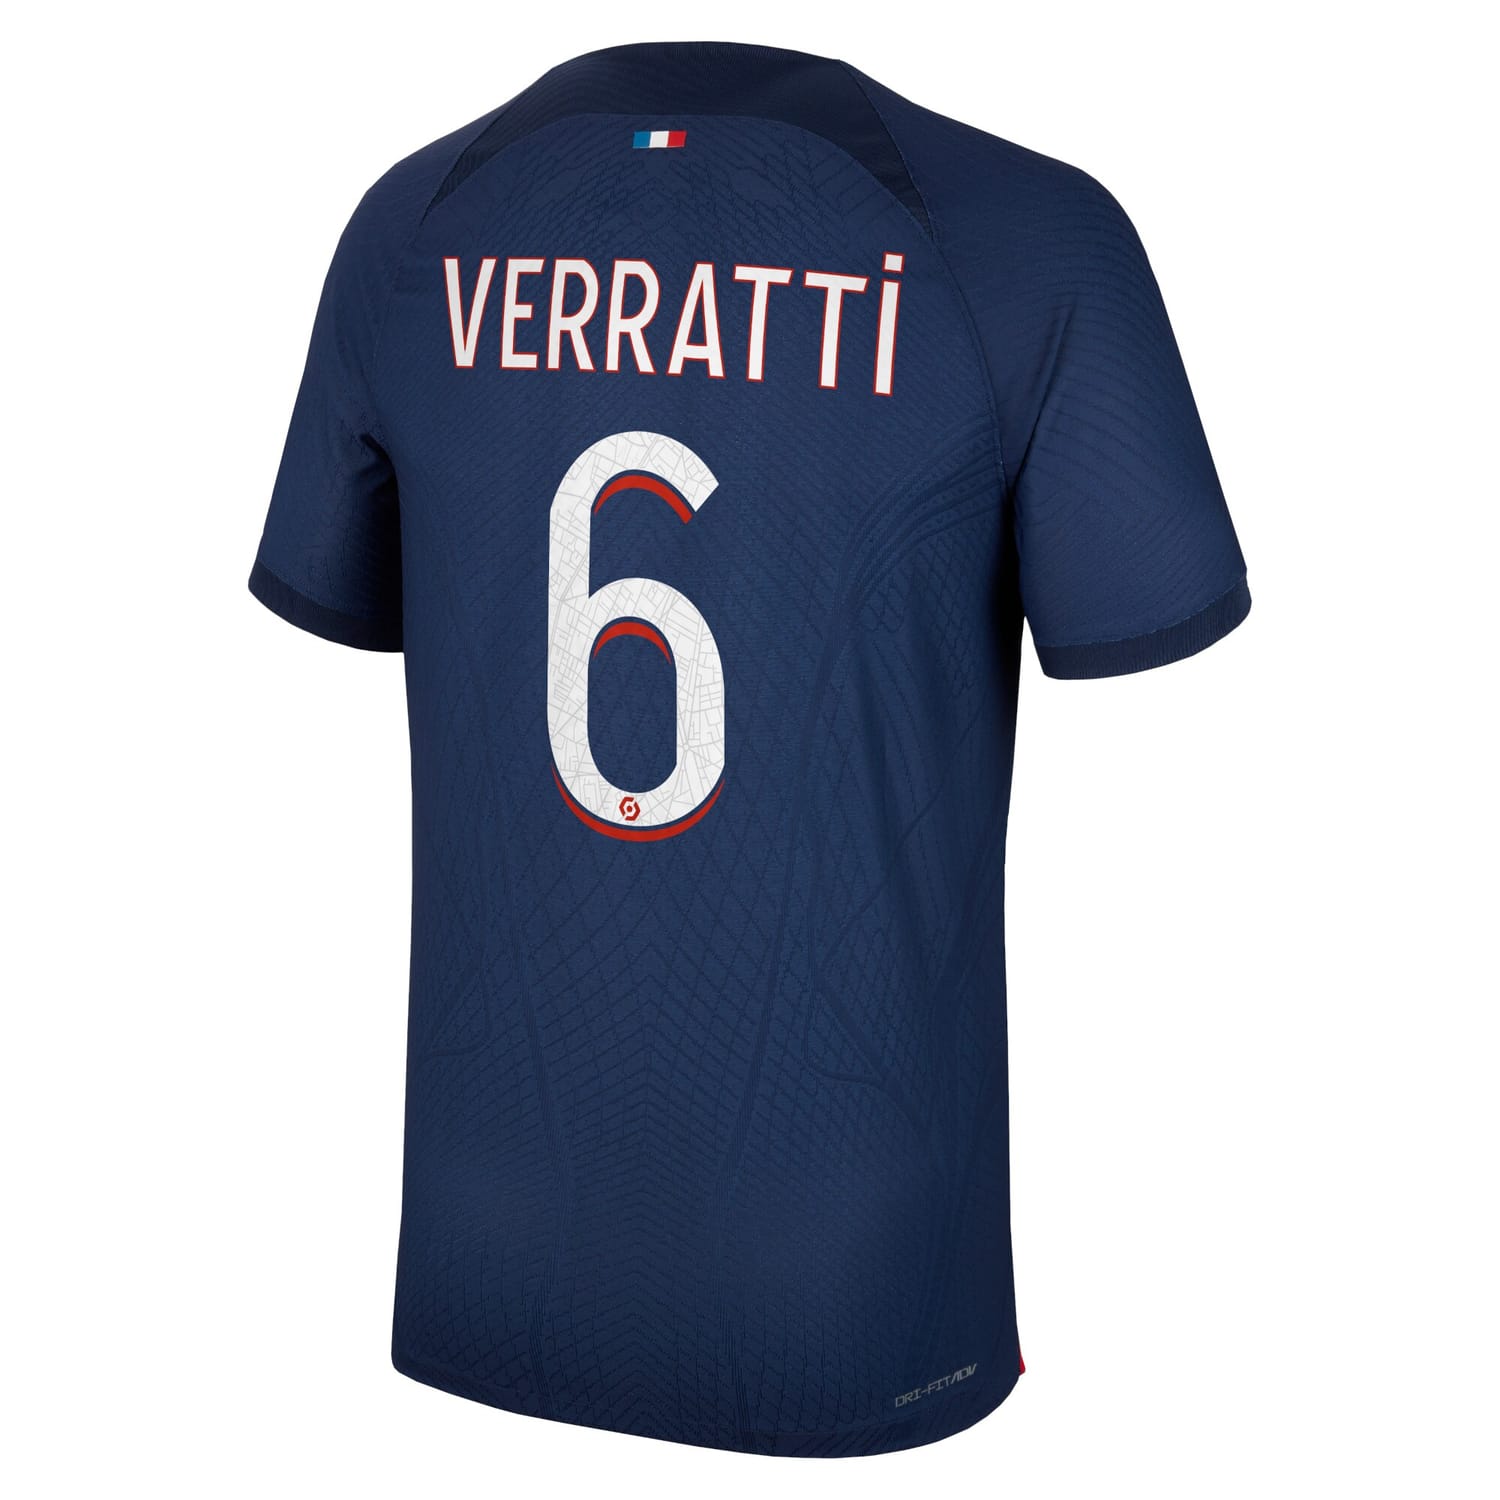 Ligue 1 Paris Saint-Germain Home Authentic Jersey Shirt 2023-24 player Marco Verratti 6 printing for Men